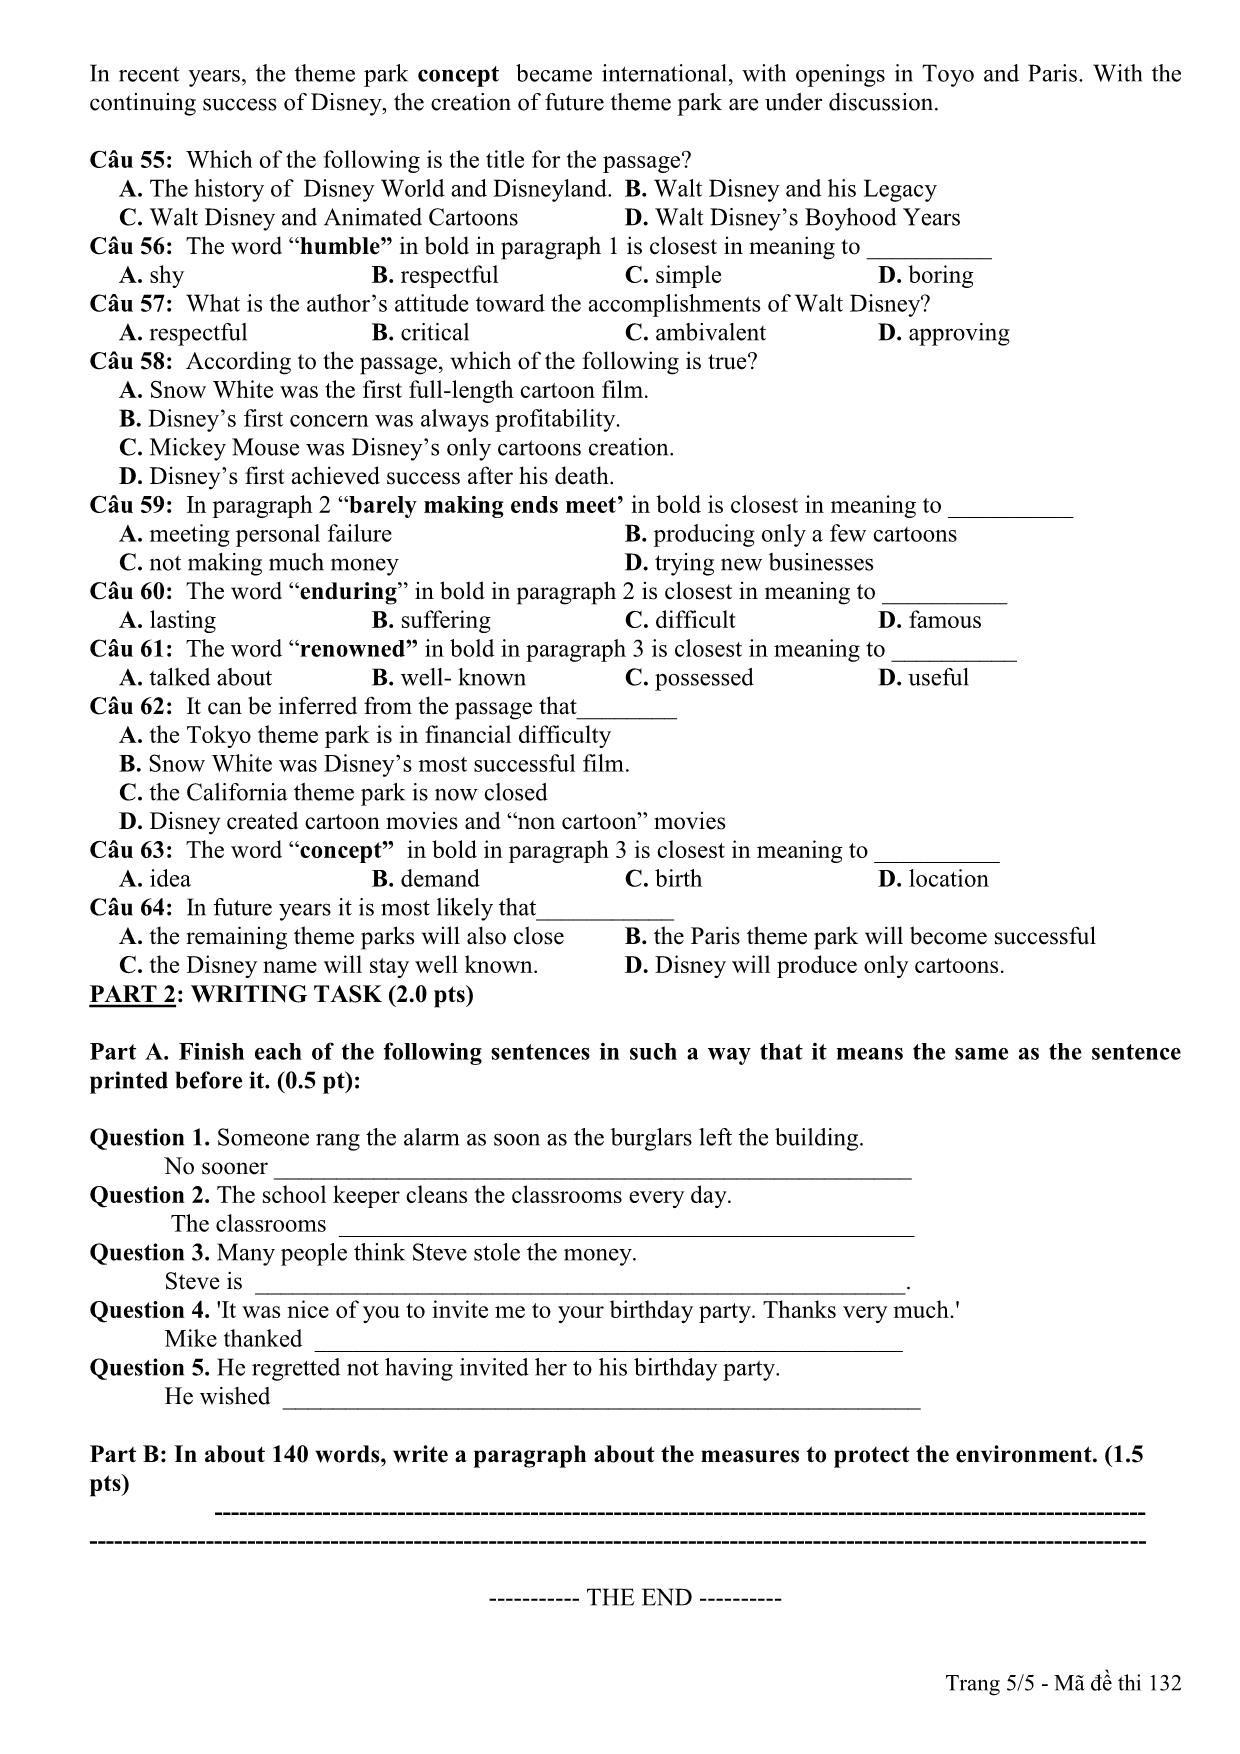 Đề thi thử THPT Quốc gia môn Tiếng Anh lần 3 - Mã đề 132 - Năm học 2014-2015 - Trường THPT Hàn Thuyên (Có đáp án) trang 5